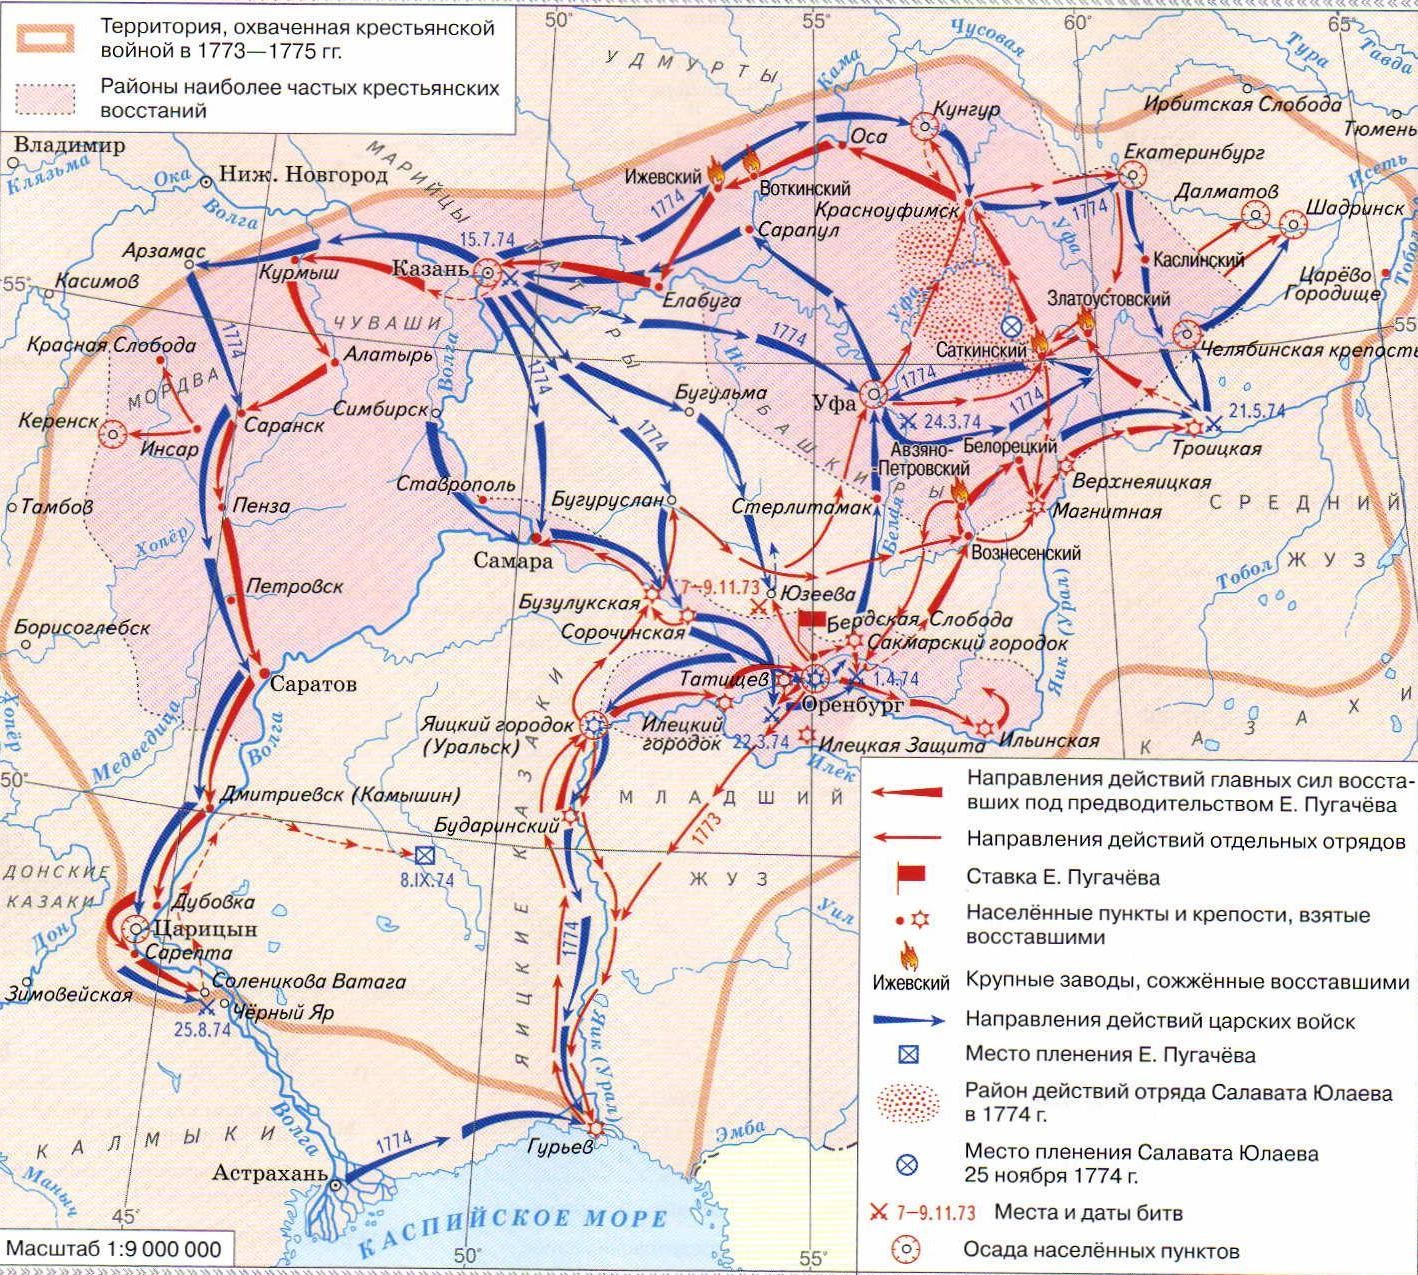 Карта 1. Восстание под руководством Емельяна Пугачёва